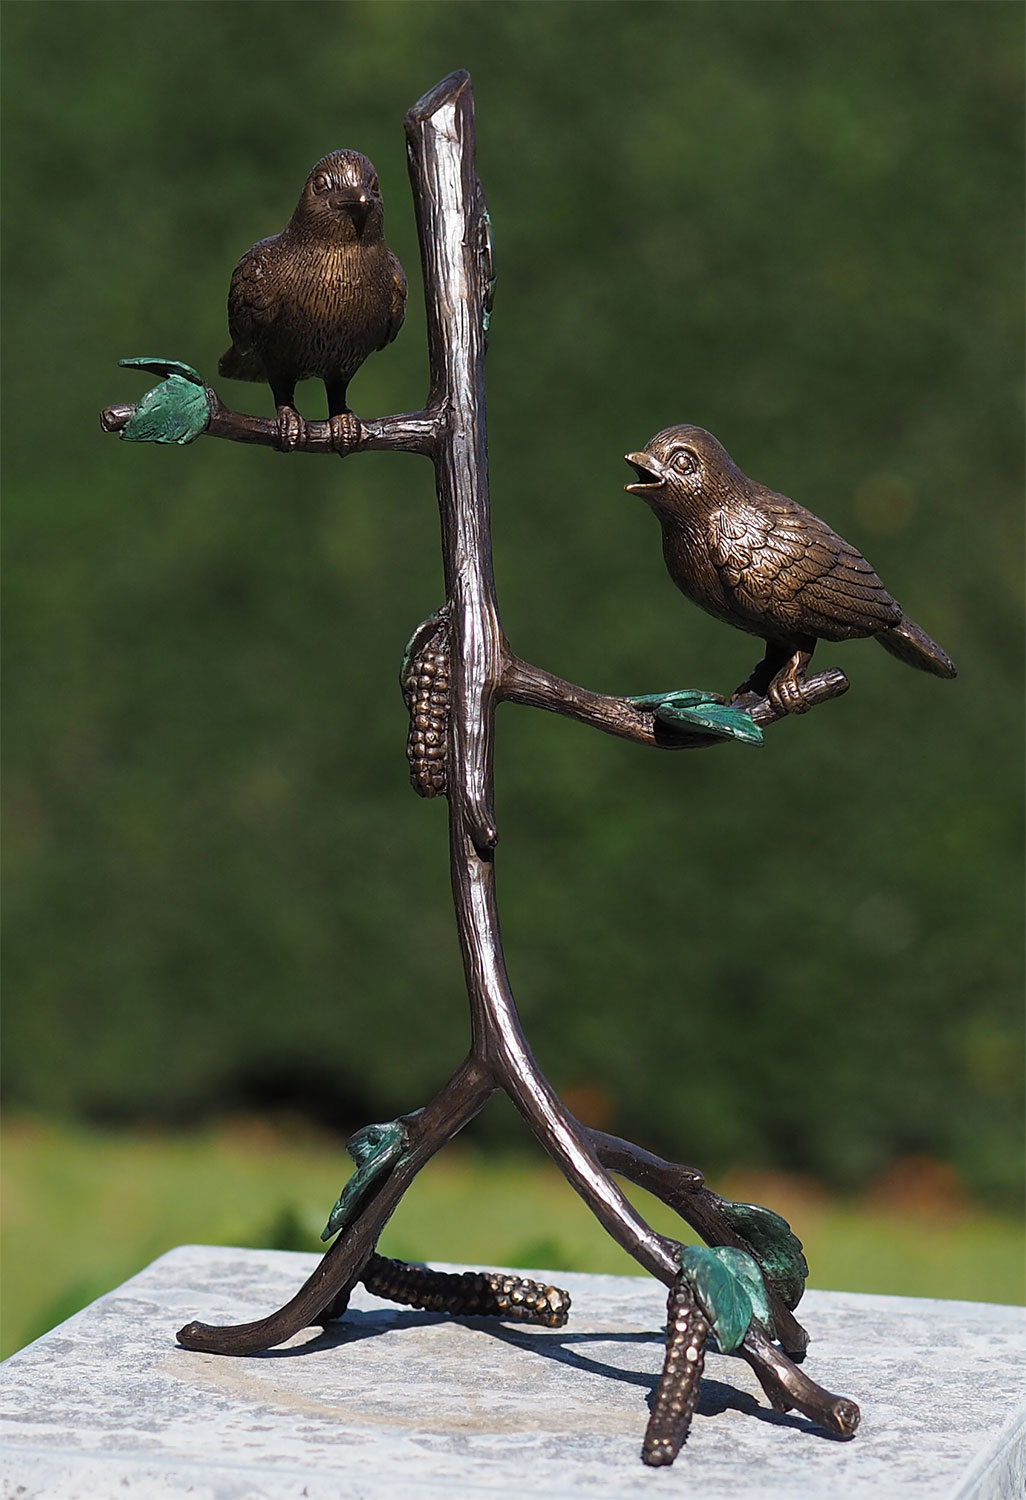 Gartenskulptur "Vögel auf Ast", Bronze